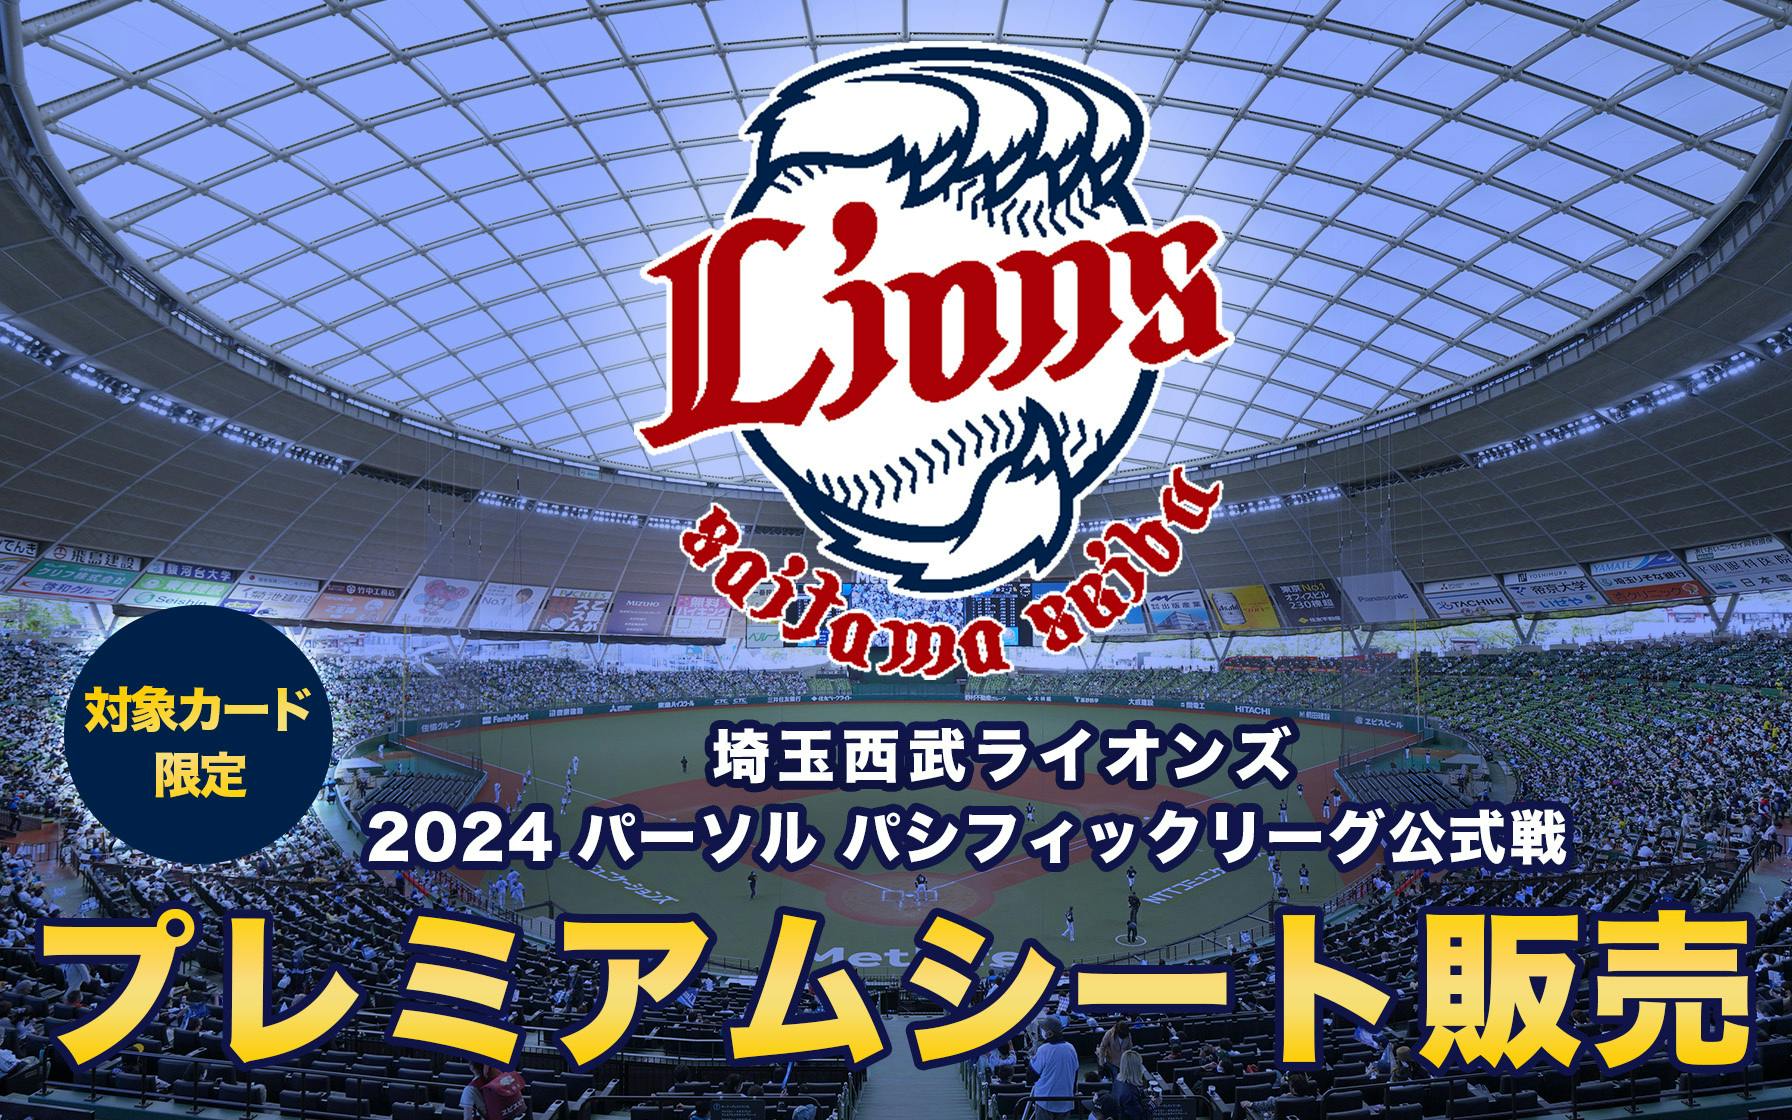 埼玉西武ライオンズ、2024年パリーグ公式戦ベルーナドーム開催分のプレミアムシートが3月1日から販売開始(先着順)